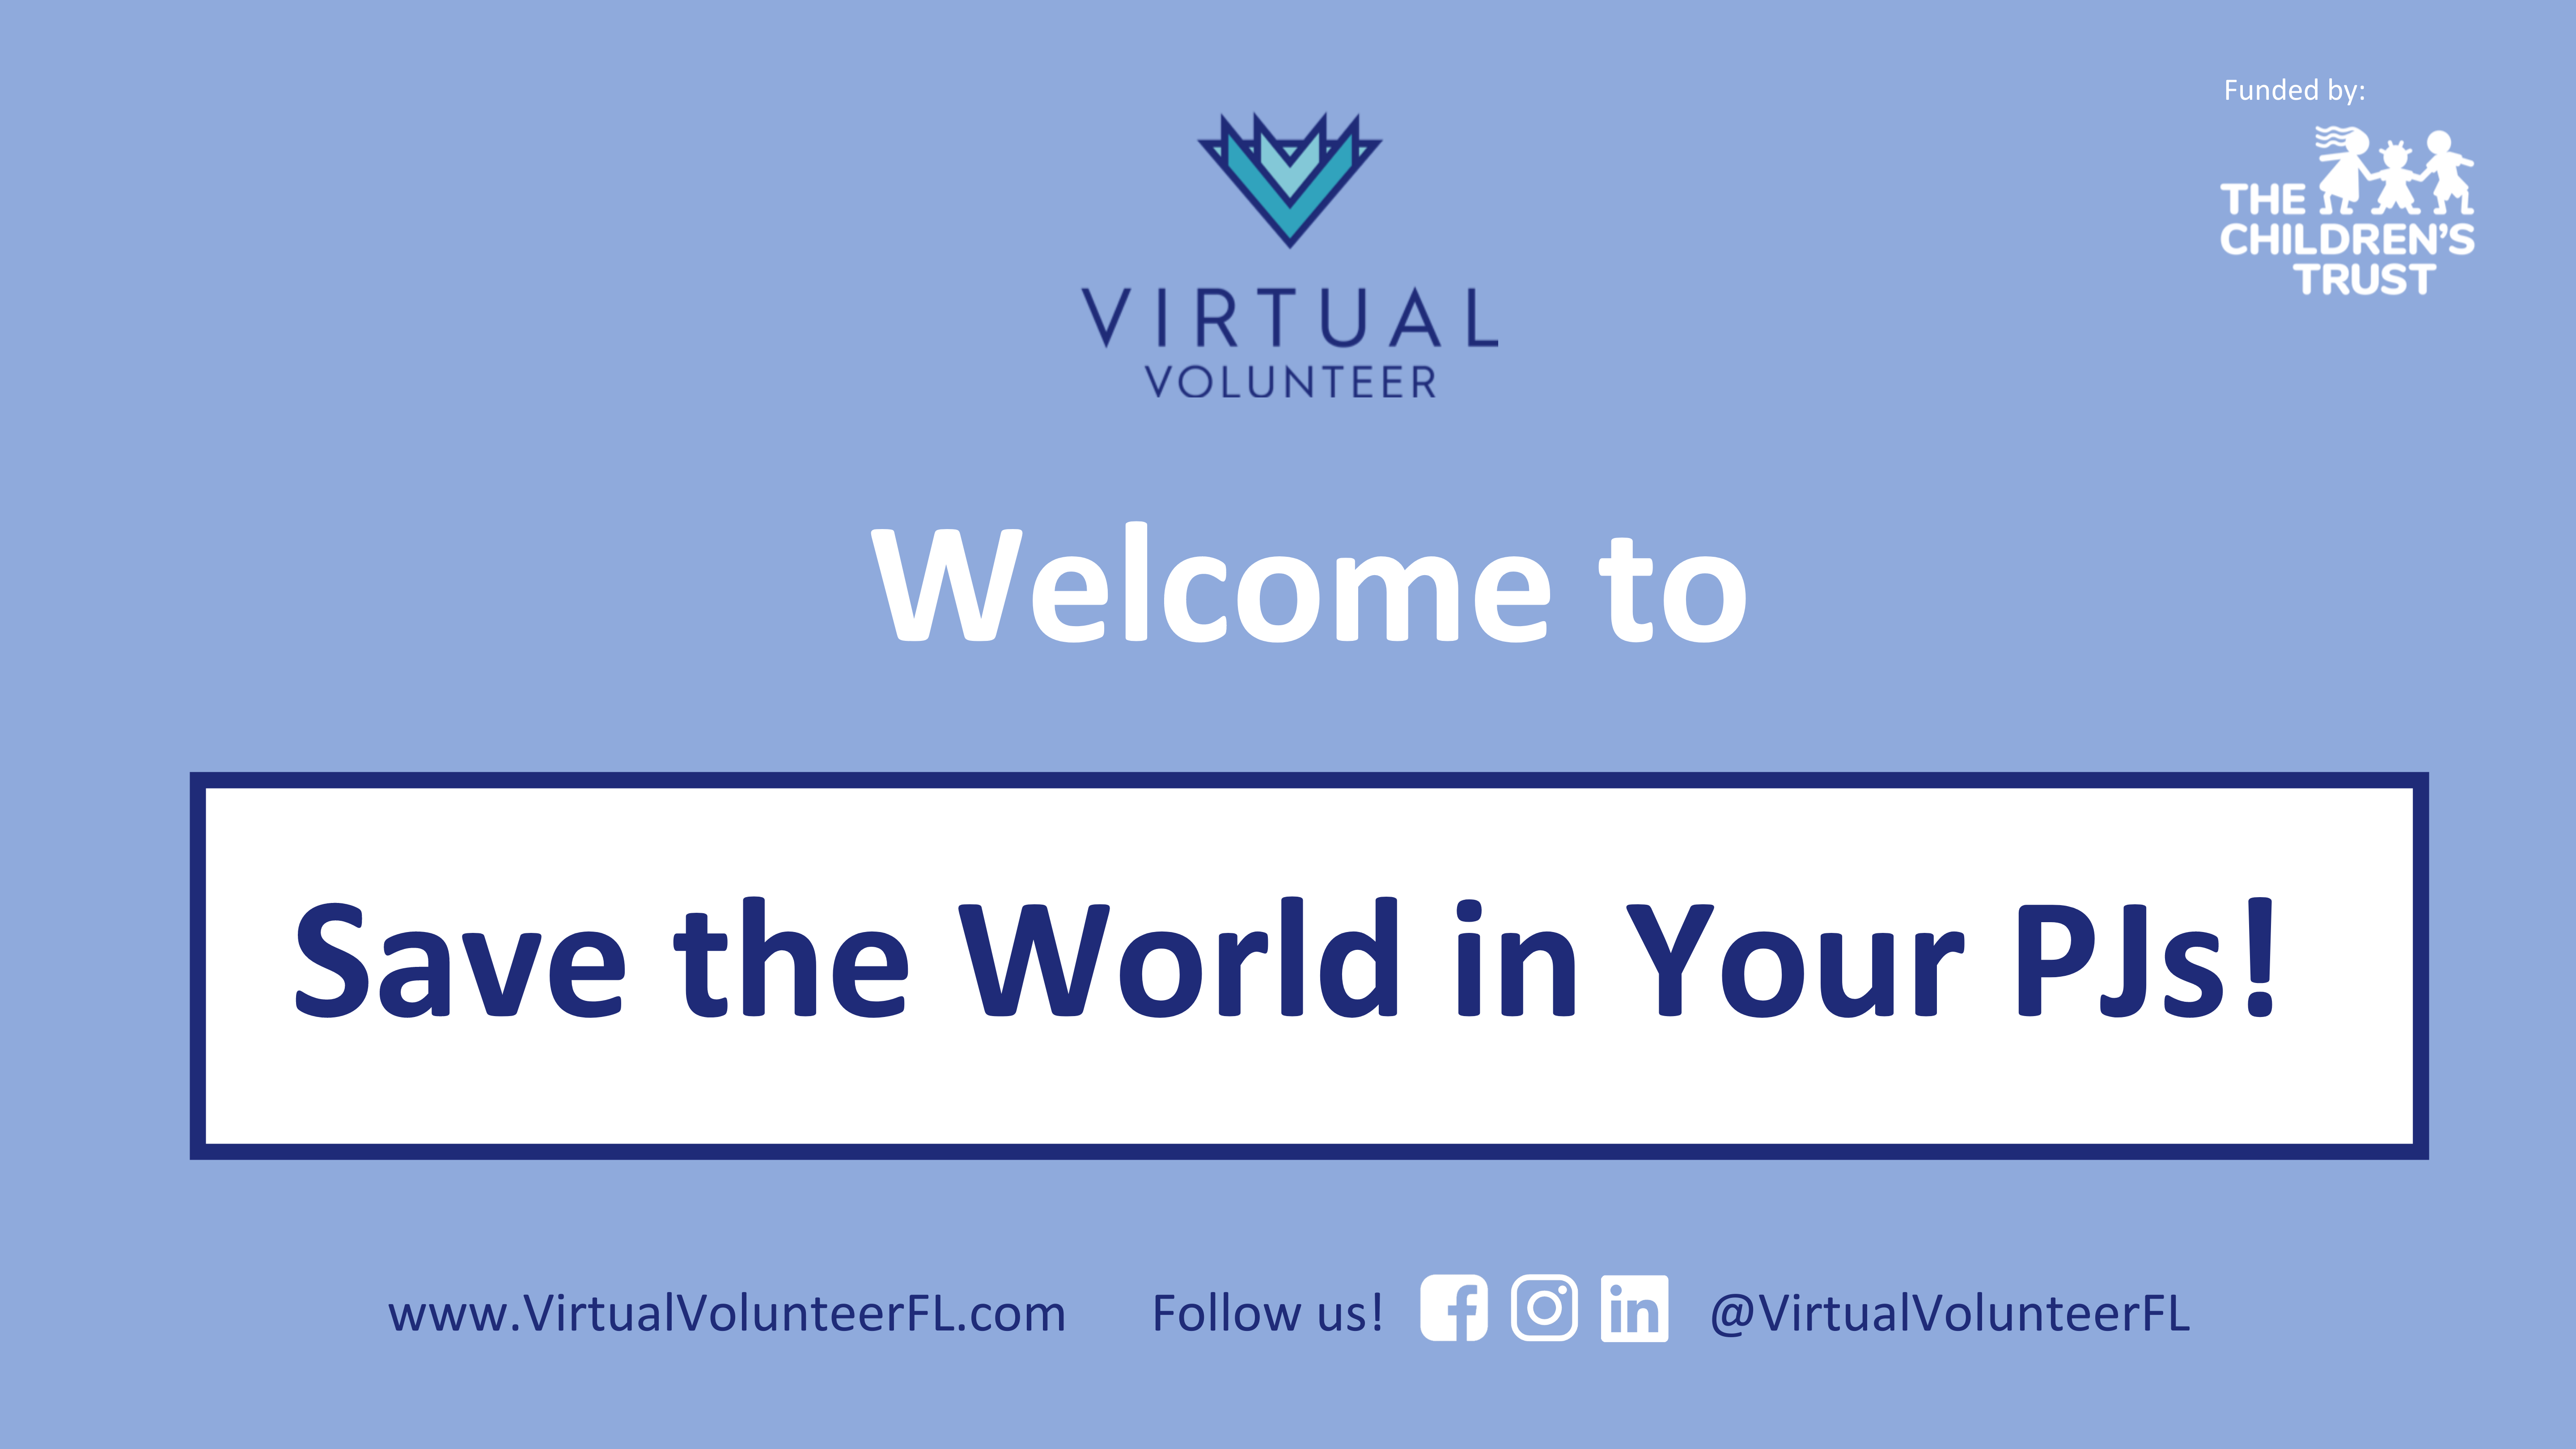 Virtual Volunteer